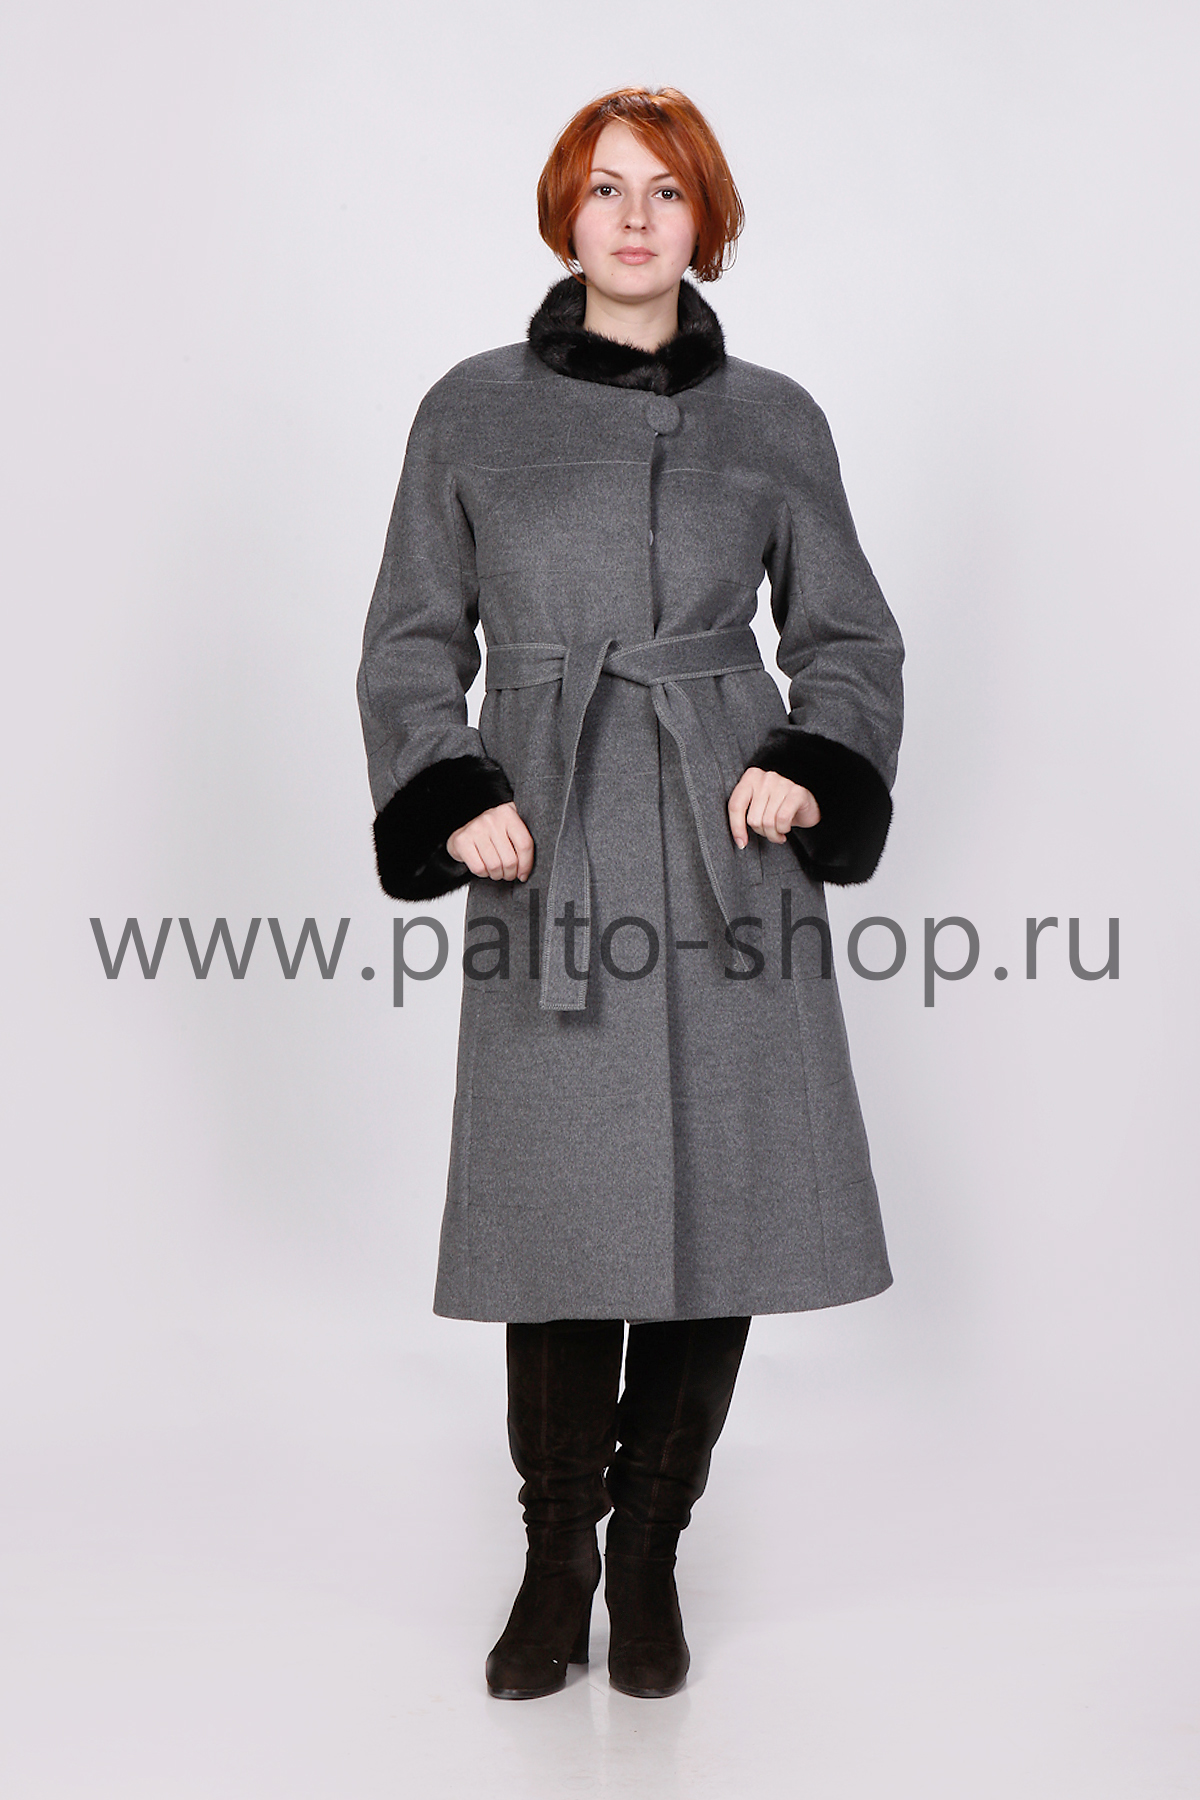 Зимнее пальто Carardli арт. CYR-001Н